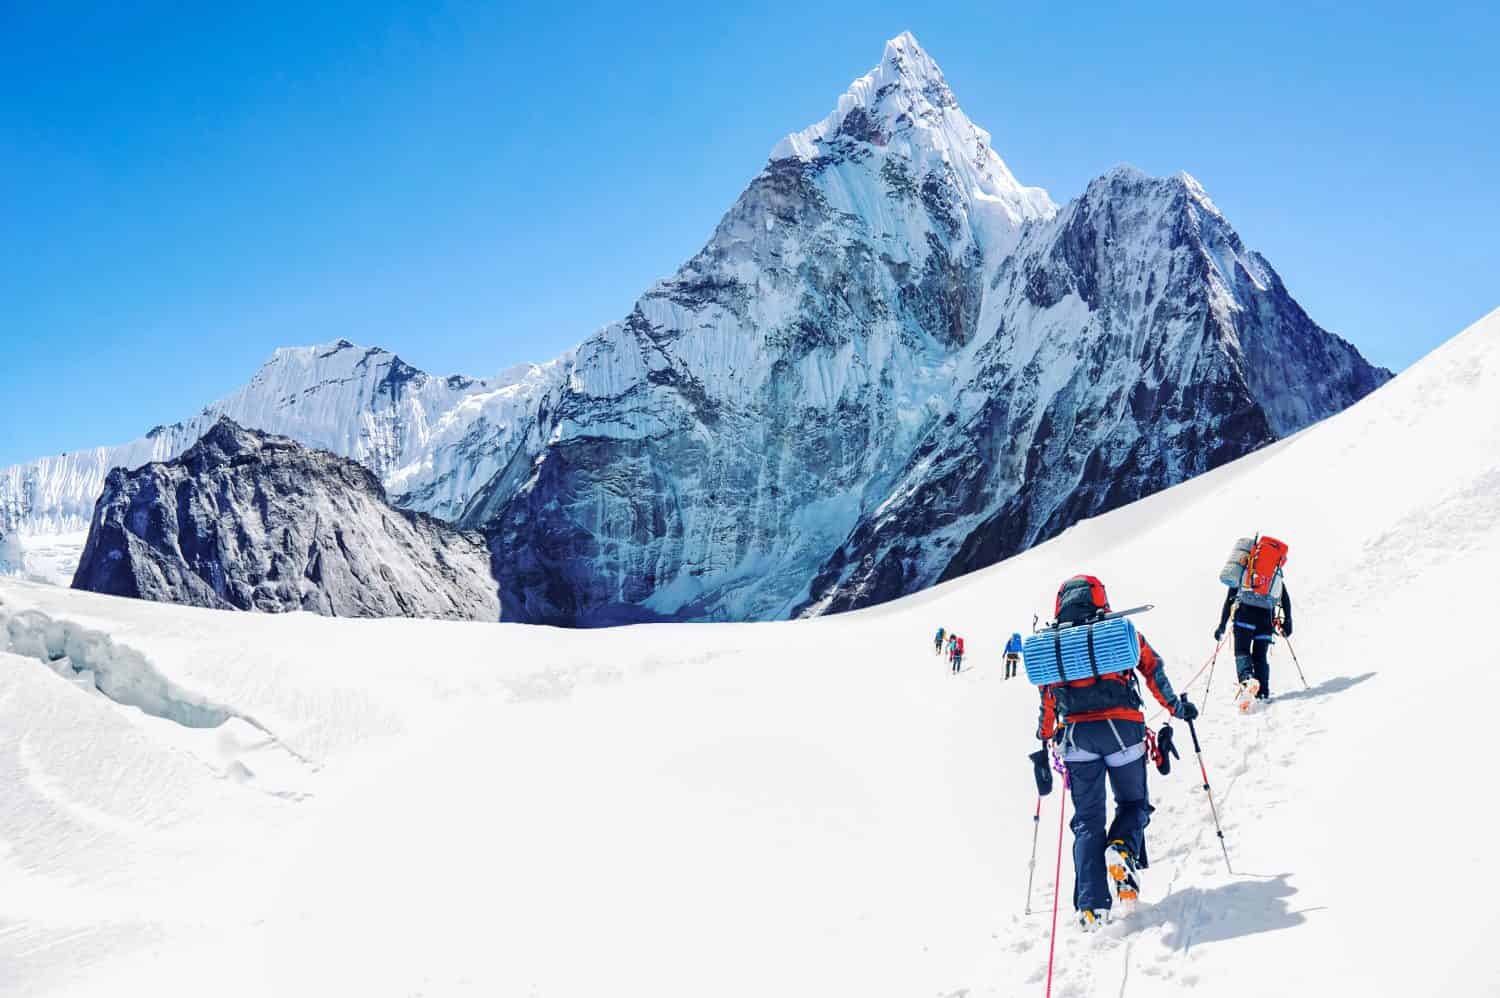 Gruppo di alpinisti che raggiungono la vetta dell'Everest in Nepal.